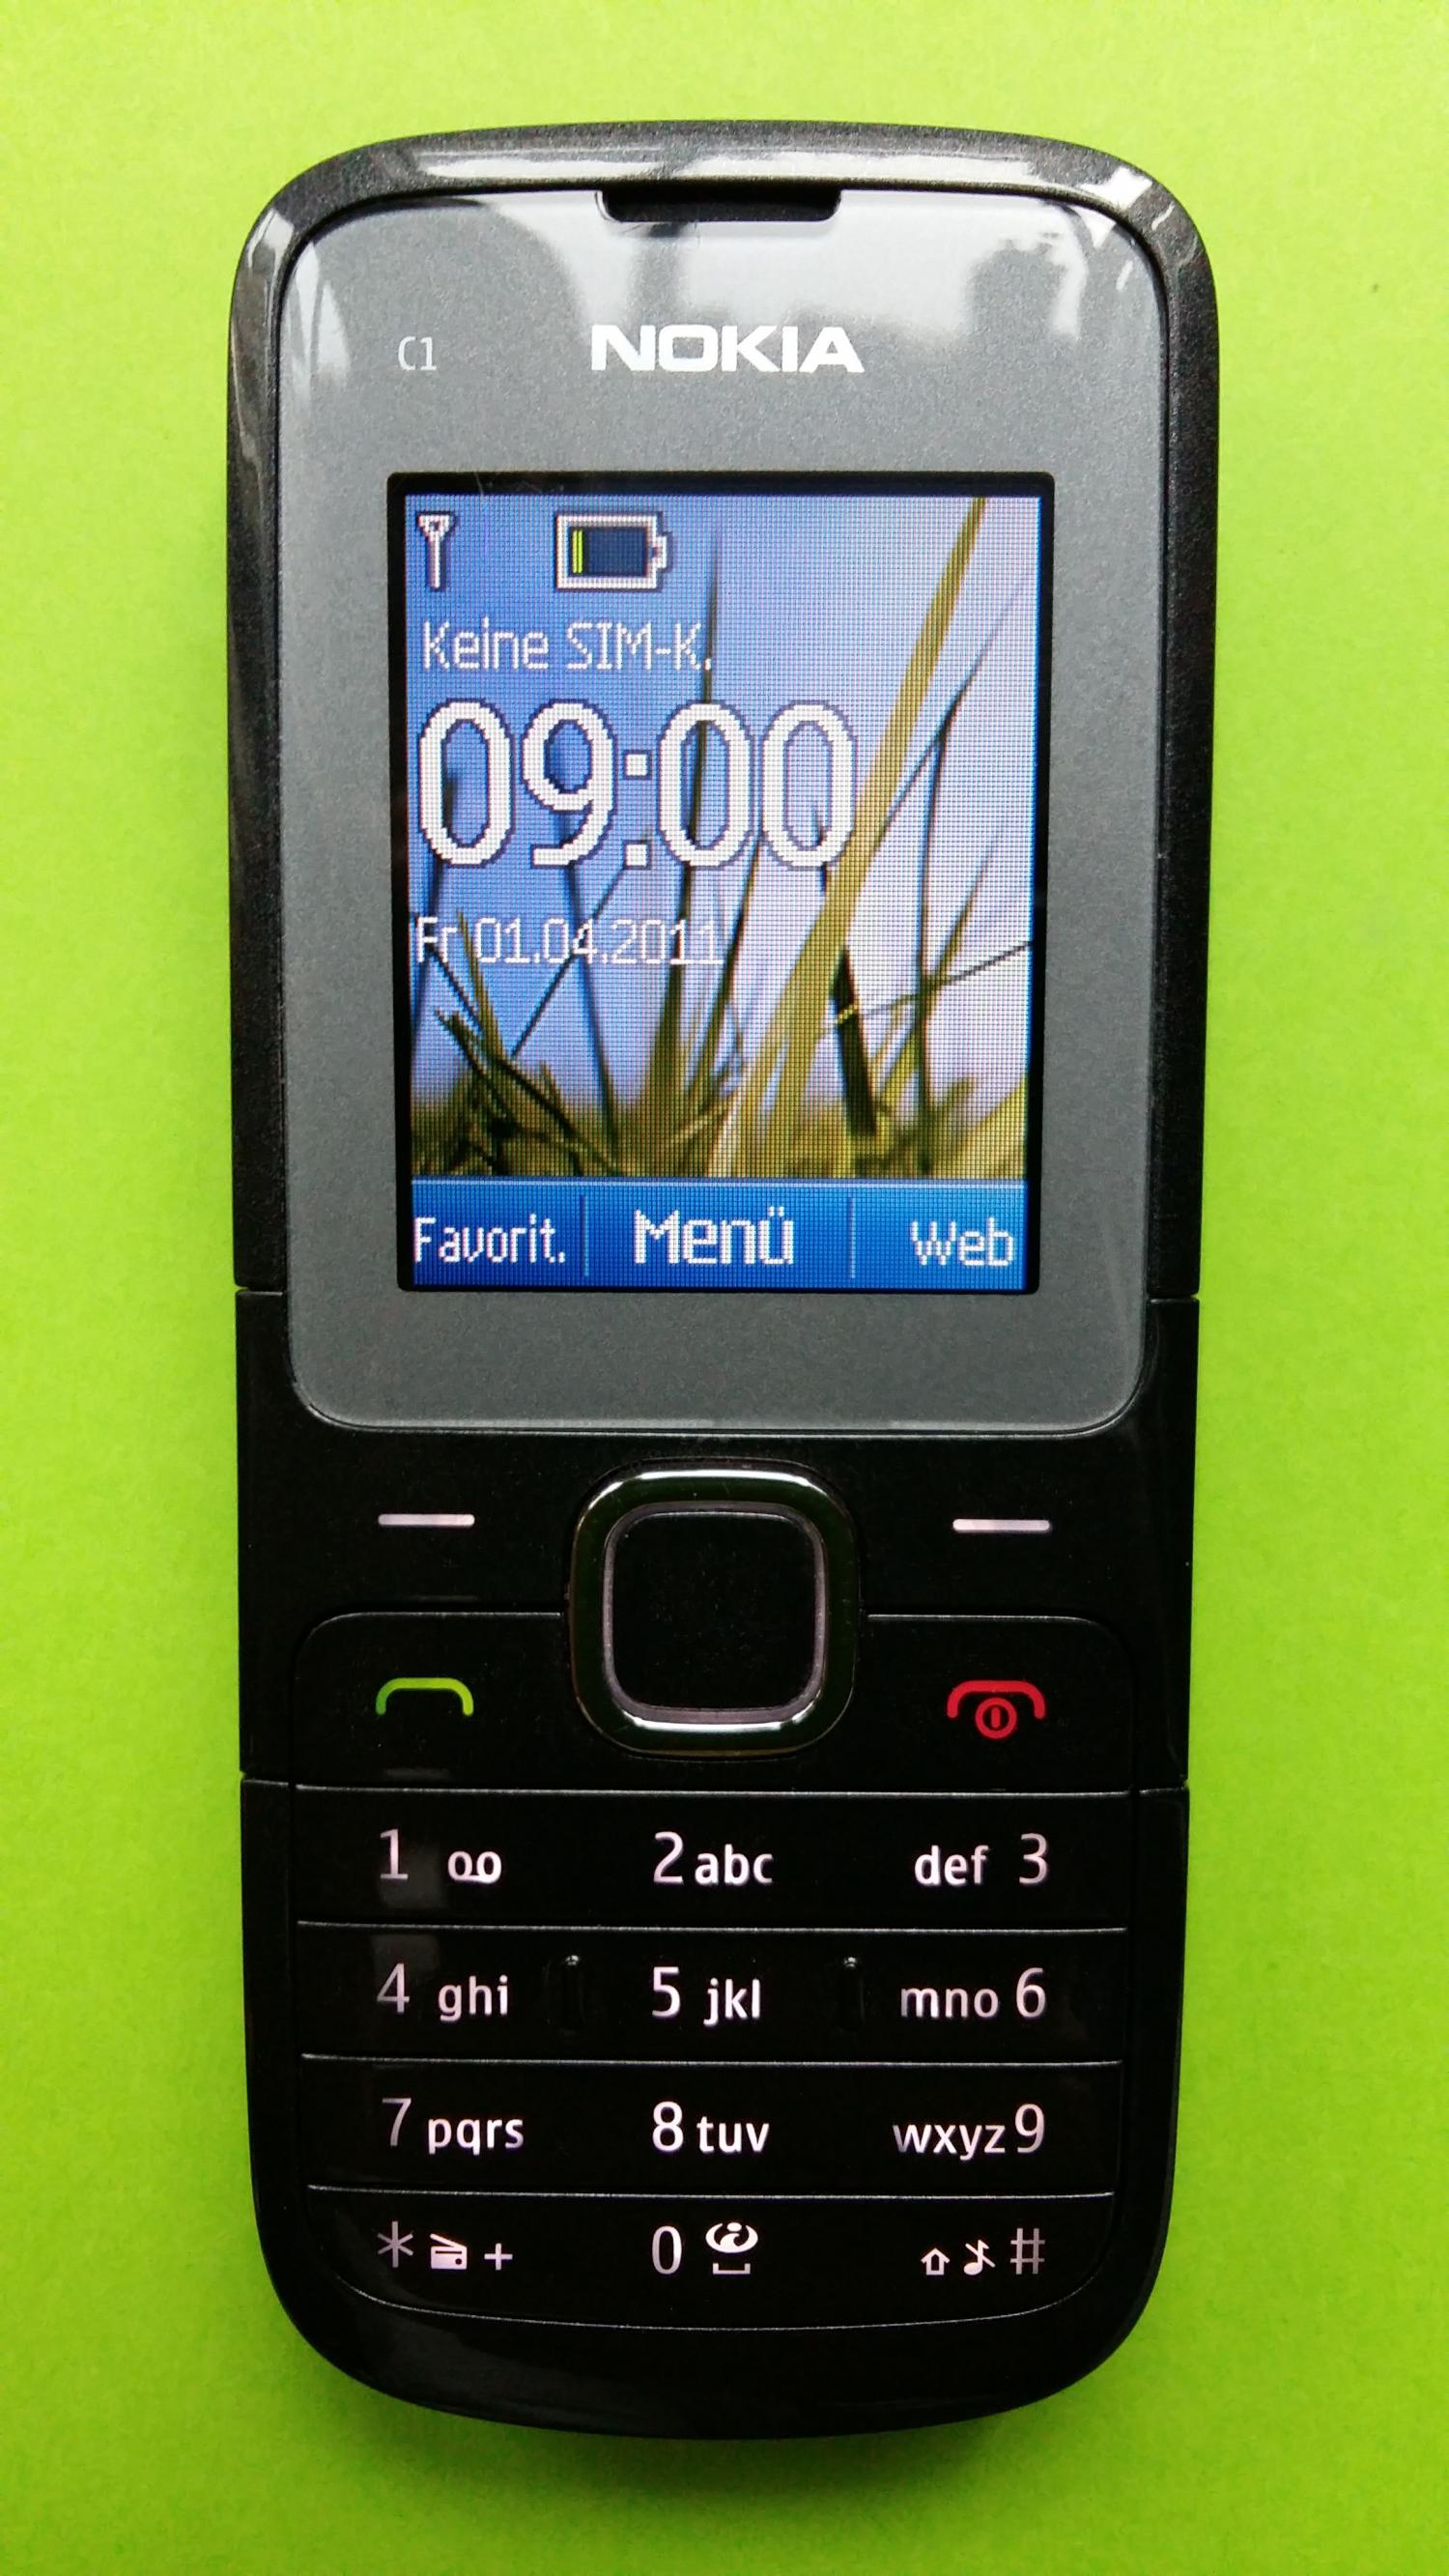 image-7308732-Nokia C1-01 (2)1.jpg